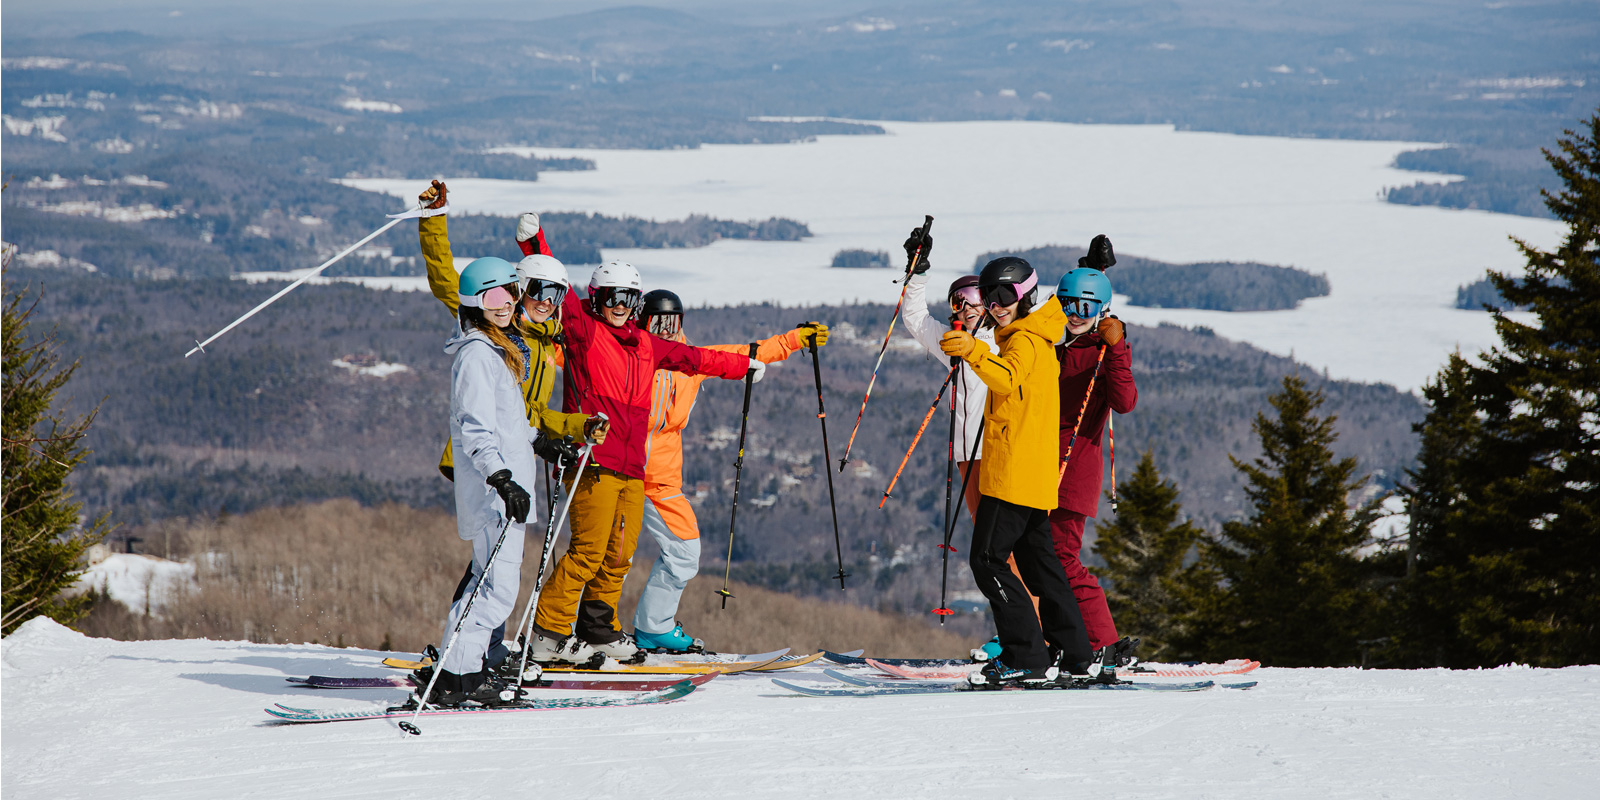 TSM, The Ski Monster, women's intermediate skis, women's skis, ski guide, skiing, skis, winter, snow